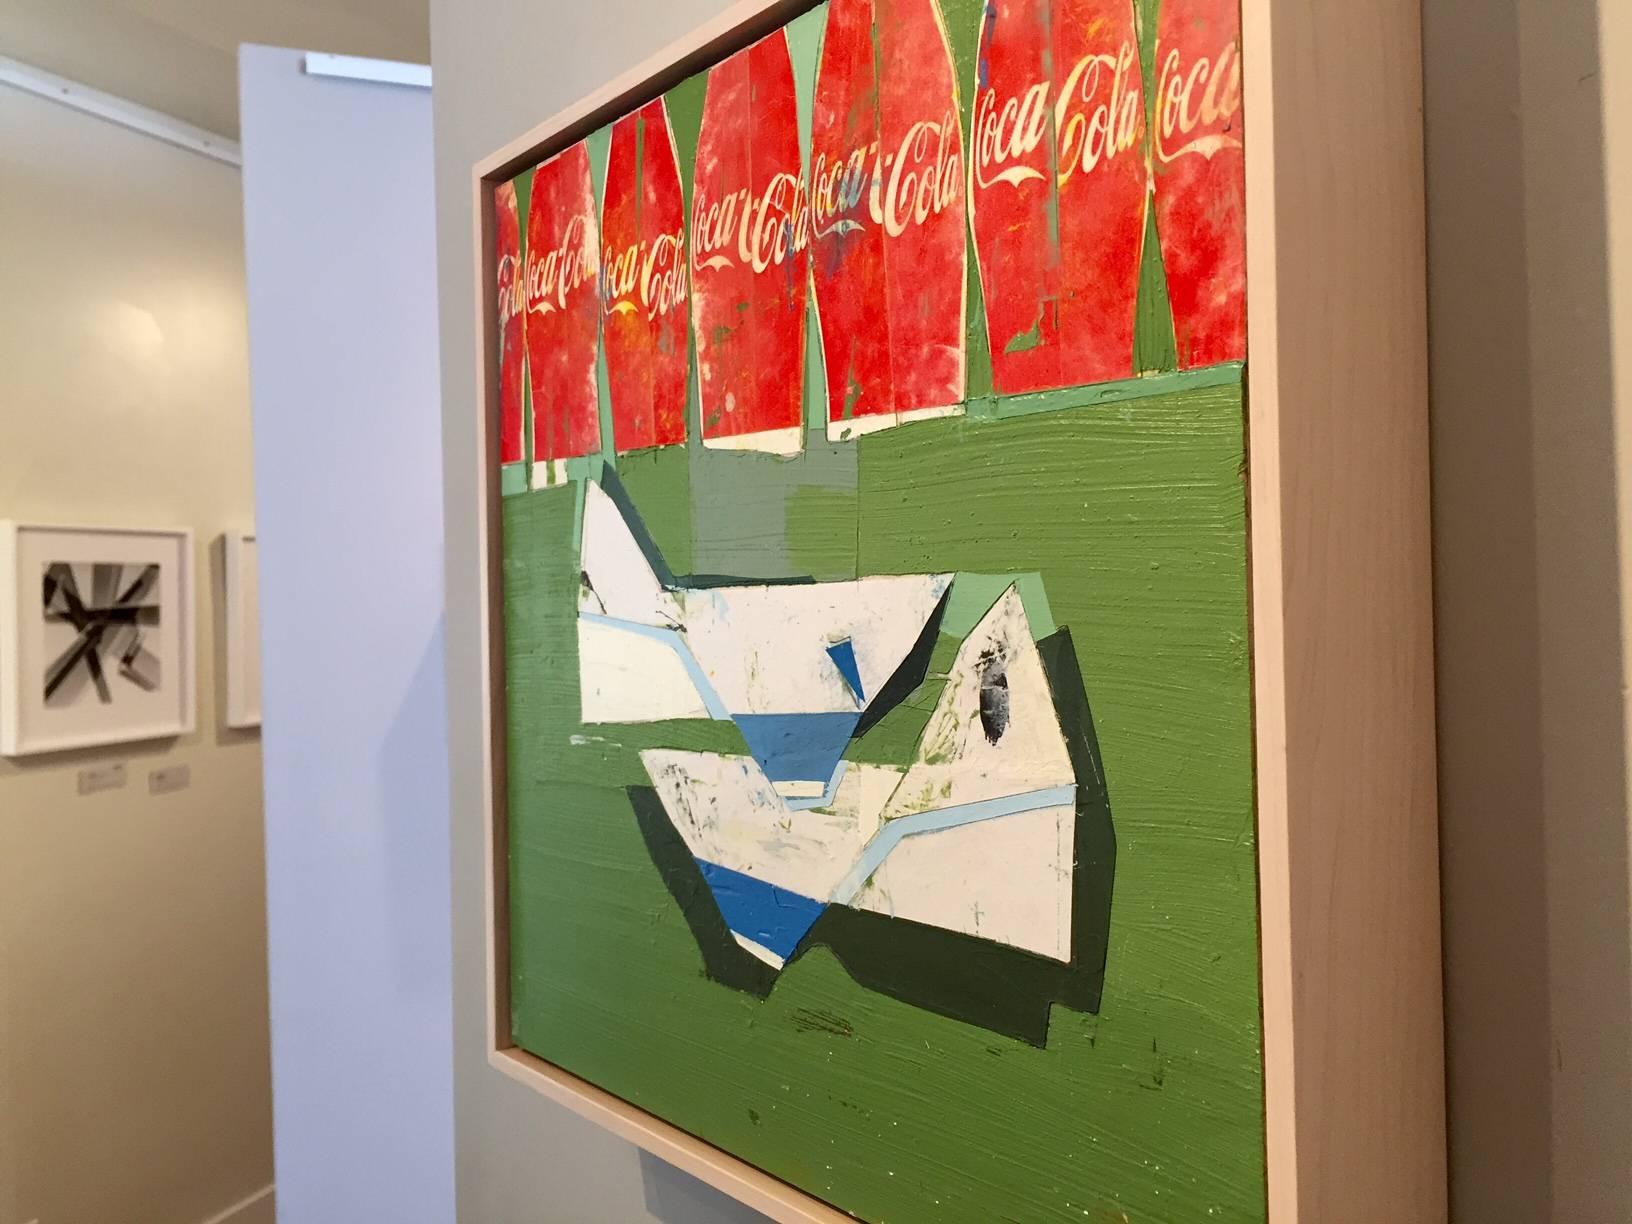 When We Were Children / Coke Work – Coca-Cola-Gemälde (Braun), Still-Life Painting, von Kim Frohsin